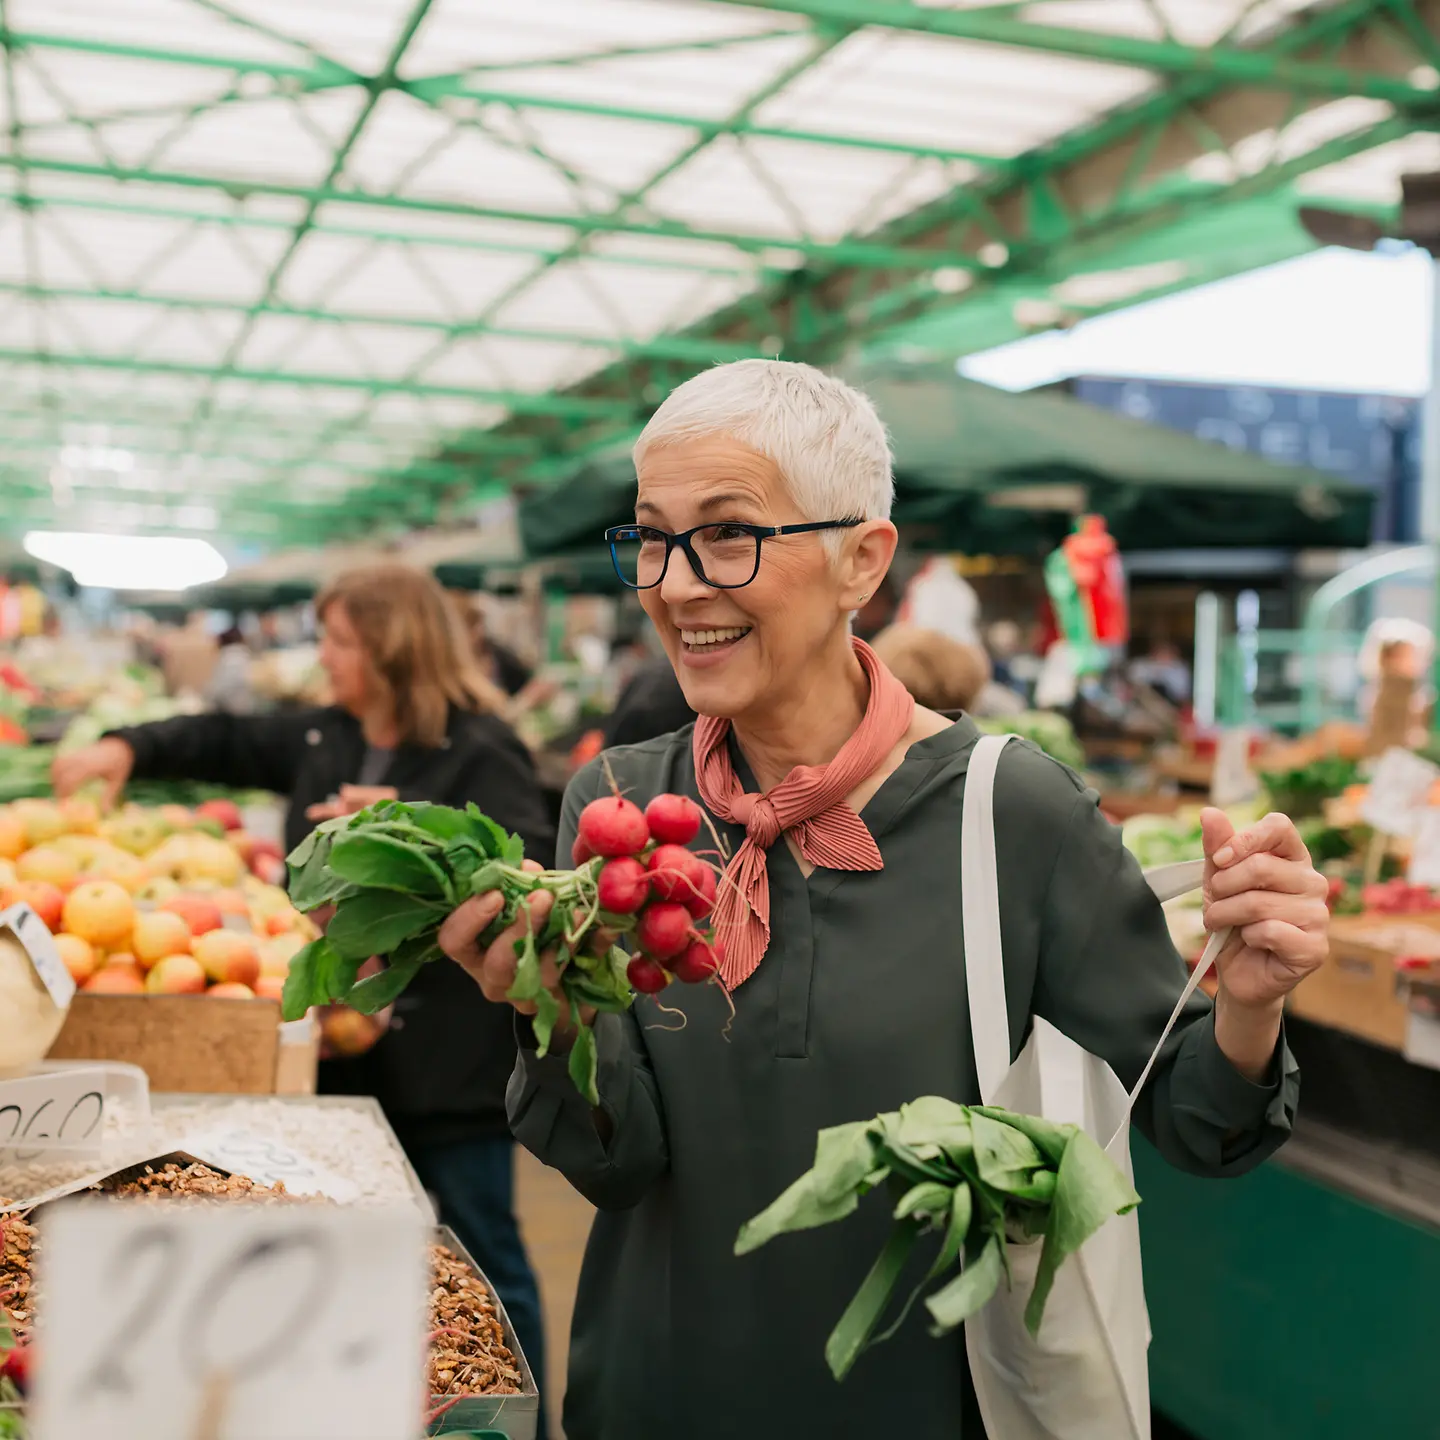 Lächelnde ältere Frau mit kurzen grauen Haaren kauft Lebensmittel auf dem Wochenmarkt ein